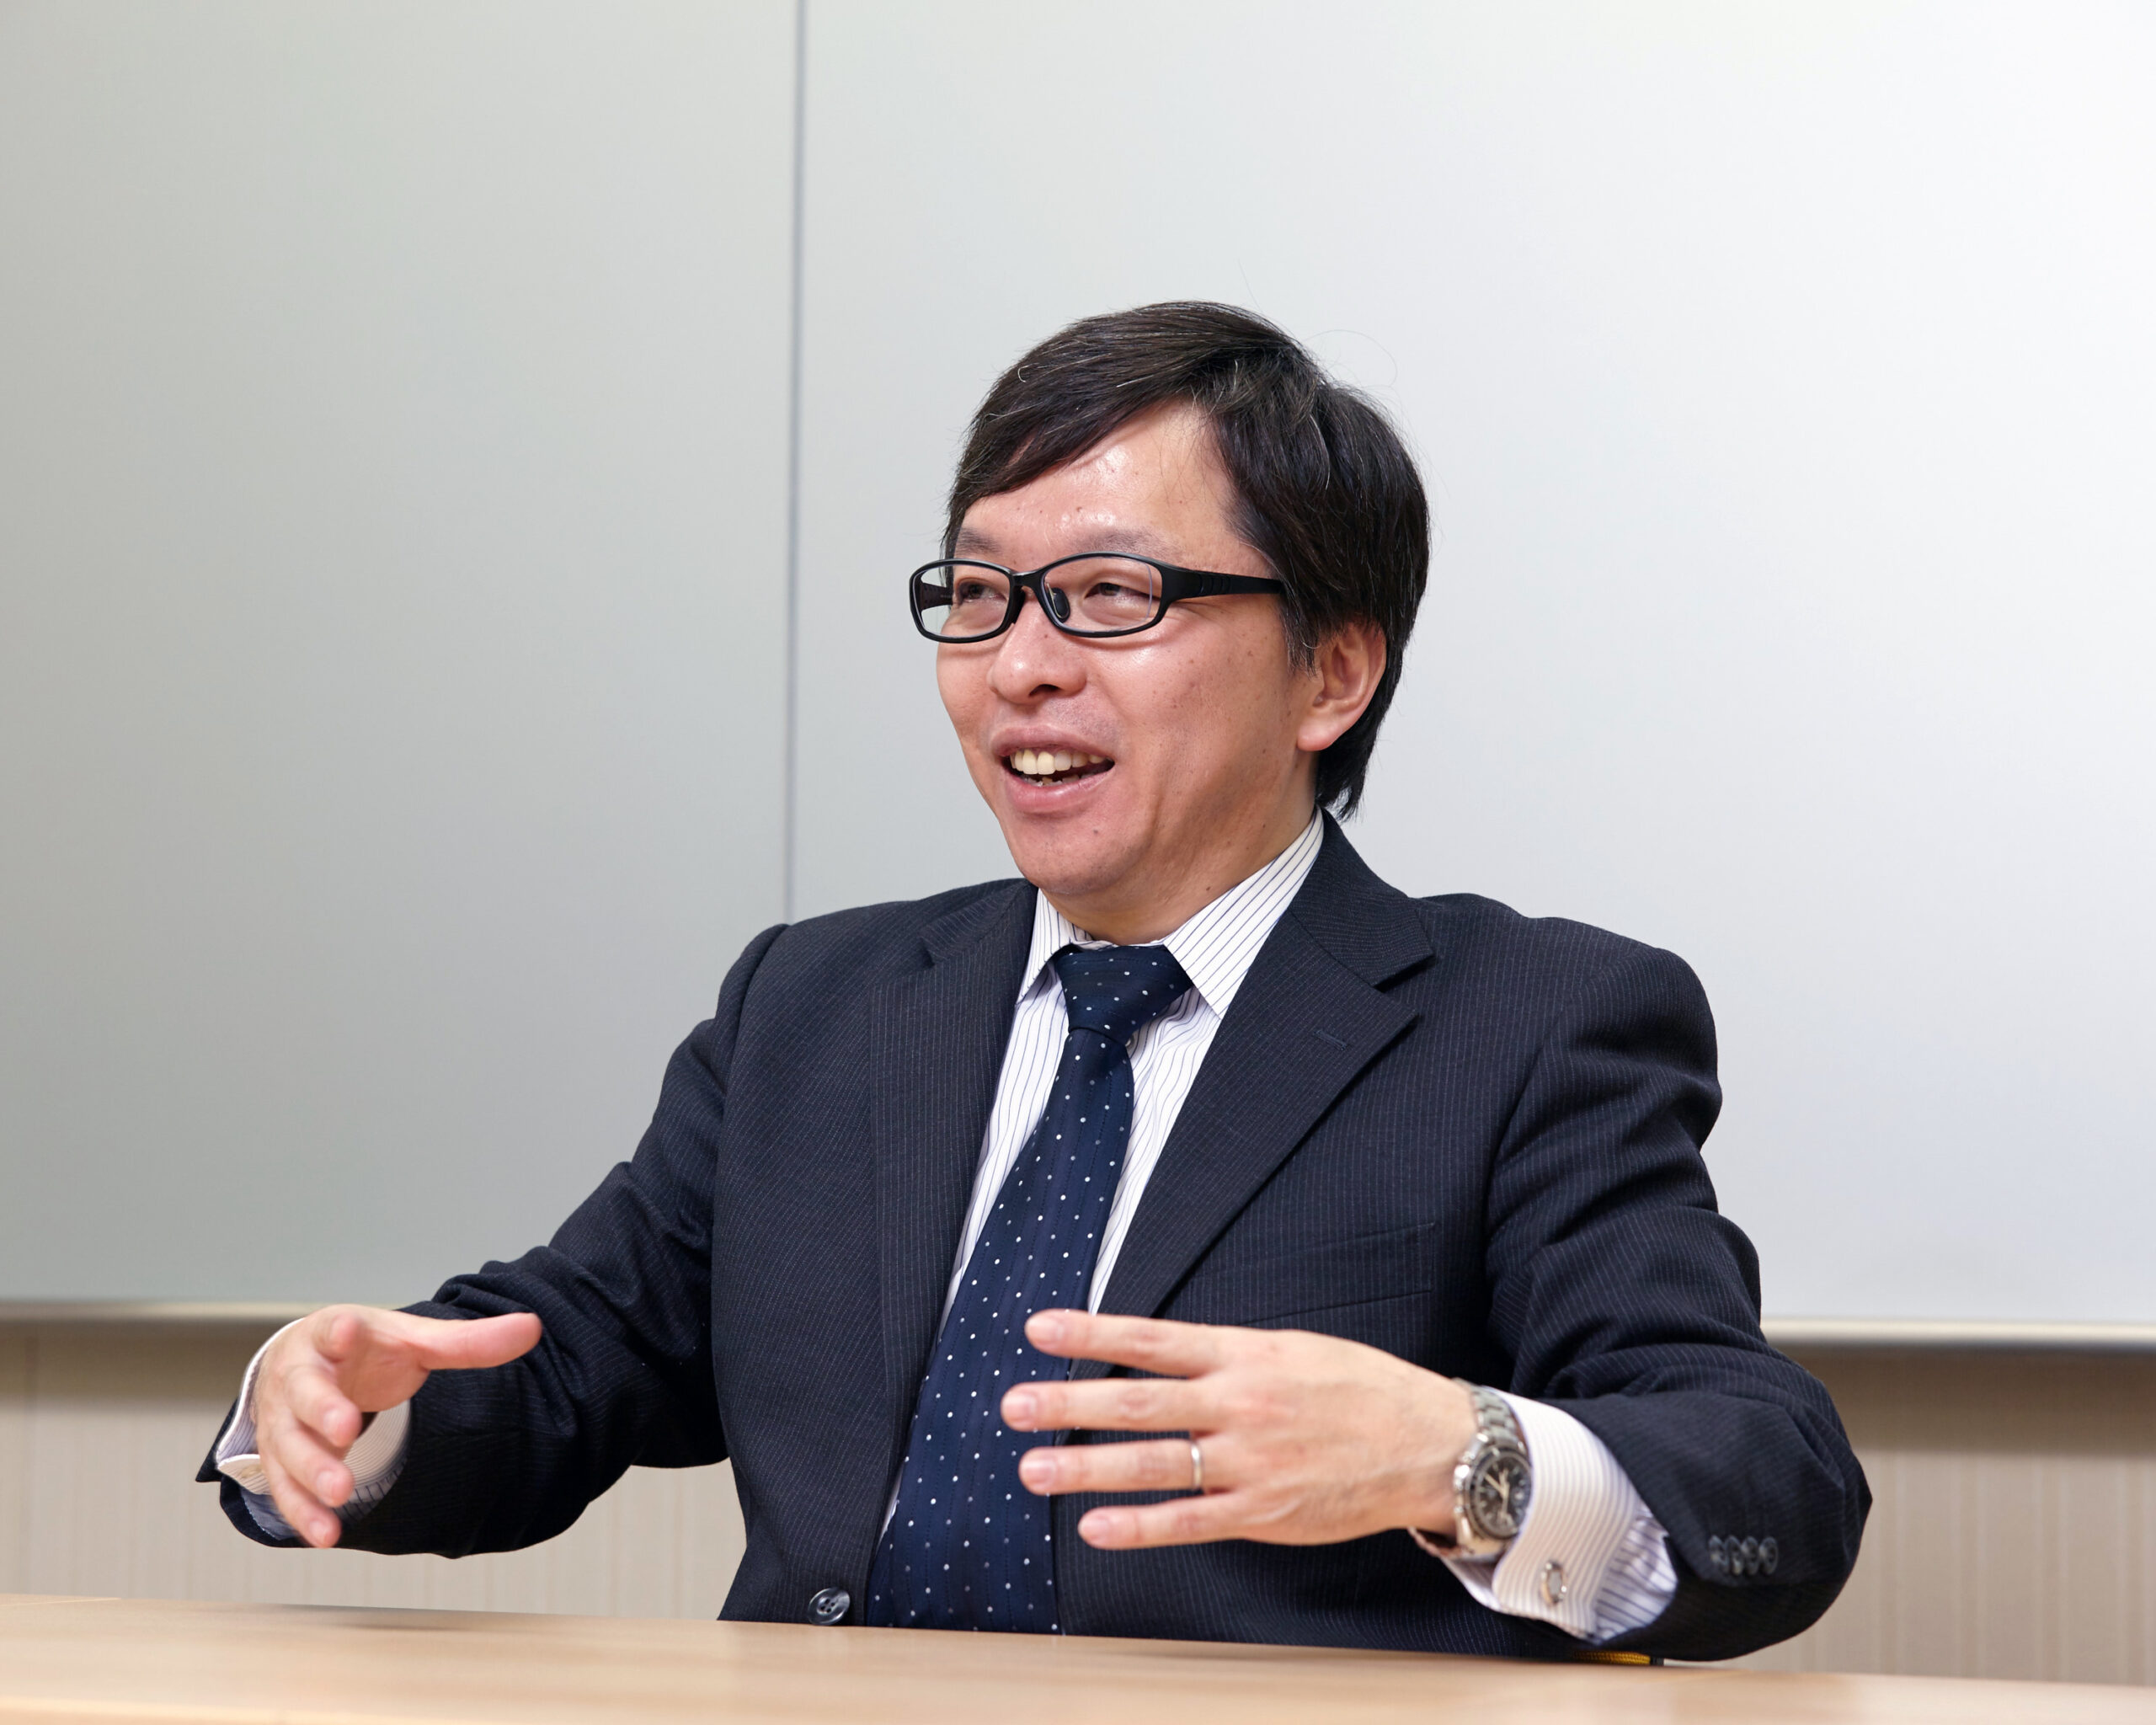 【インタビュー】日本能率協会コンサルティング、アフターコロナ・Withコロナにおける製造業の働き方改革